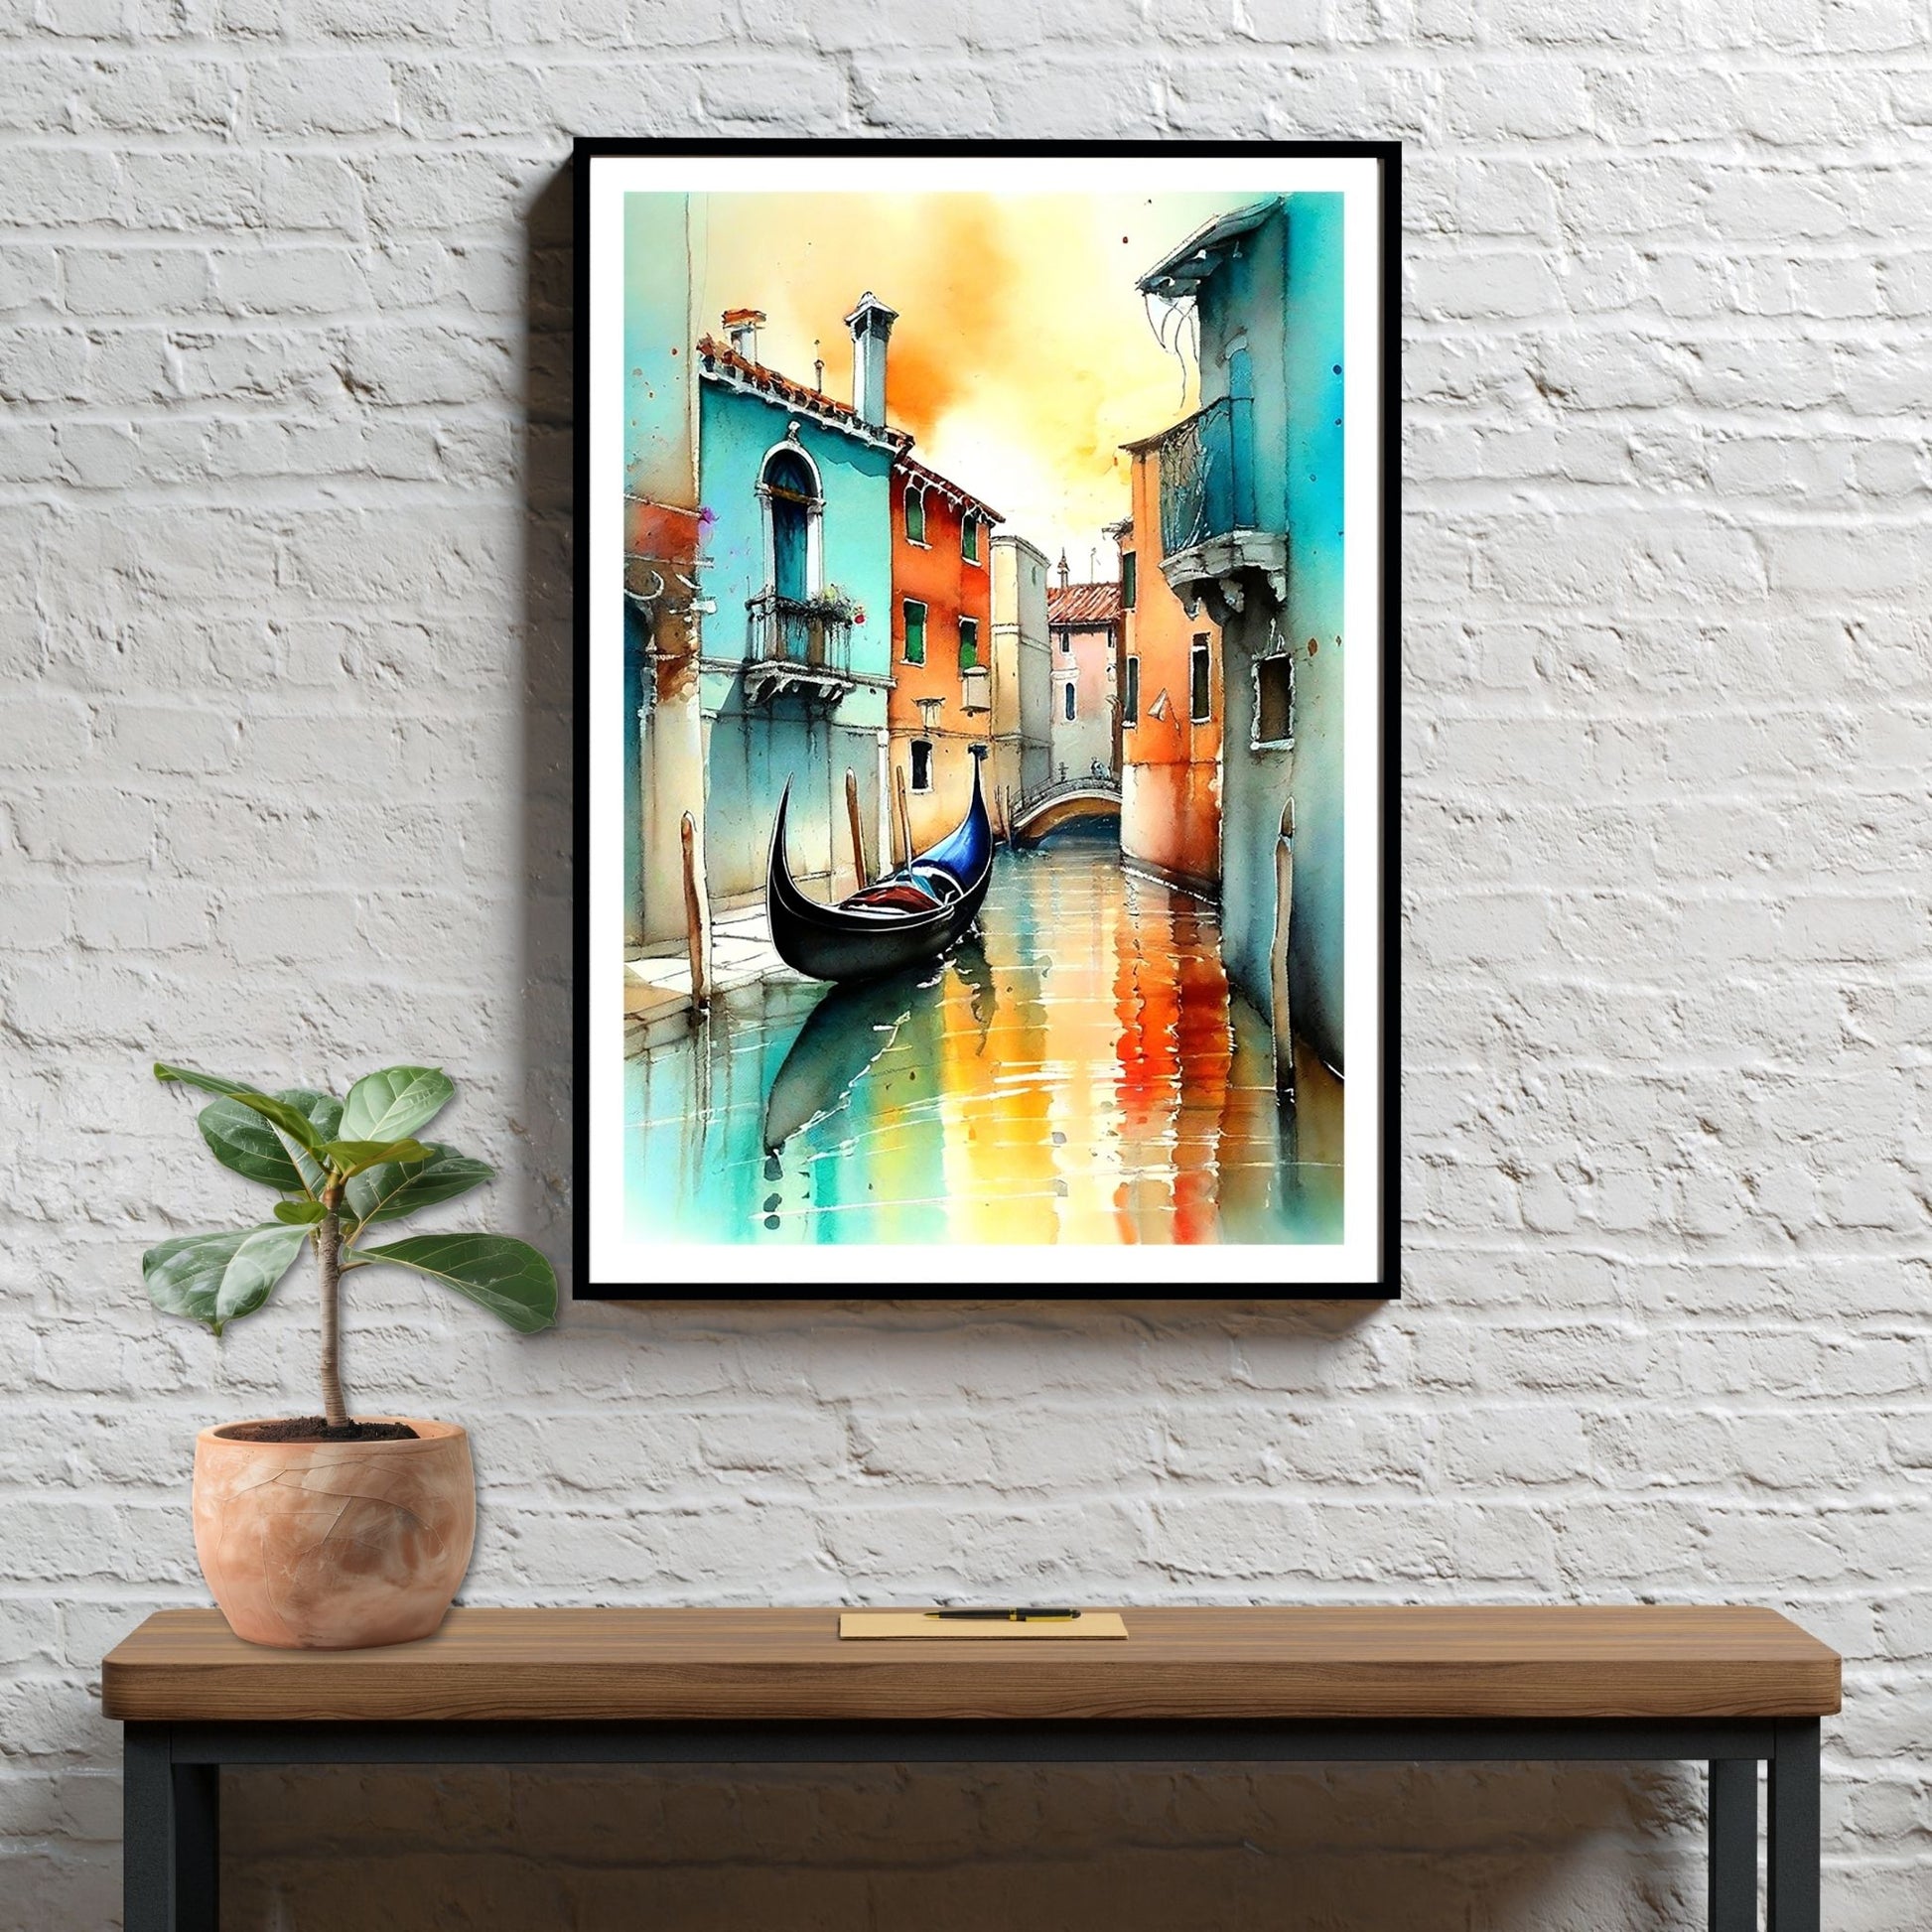 Med en fantastisk grafisk akvarell gjenskaper vi magien fra Venezia og de berømte gondolene som ligger på de pittoreske kanalene, omkranset av fargerike bygninger som speiler seg i det rolige vannet. Illustrasjonen viser motivet som plakat i sort ramme.